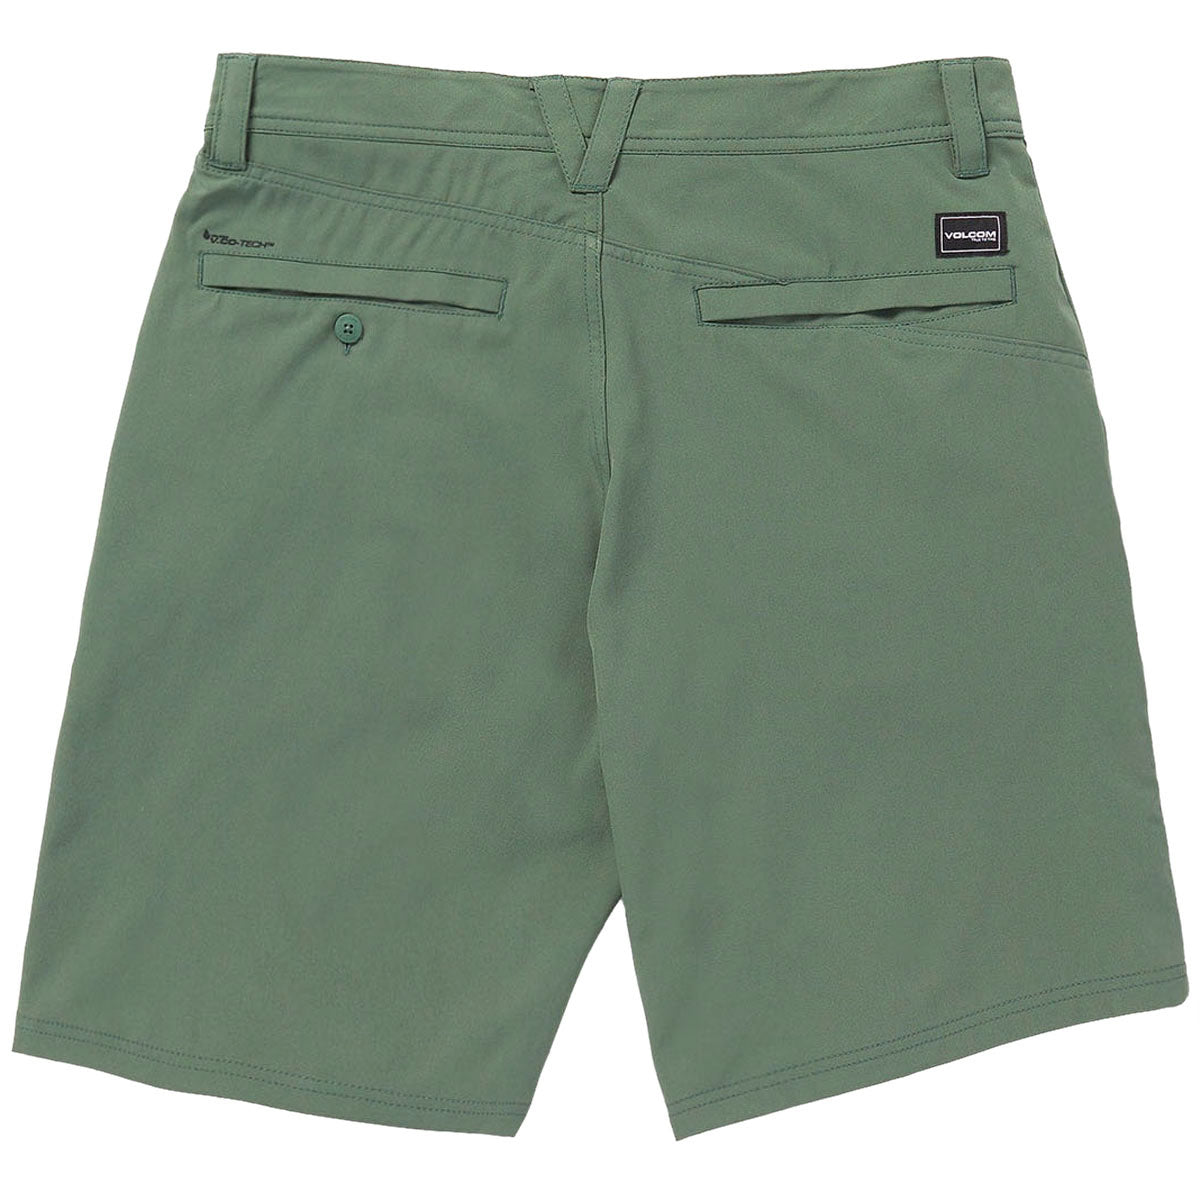 Volcom Frickin Cross Shred 20 Shorts - Fir Green image 2